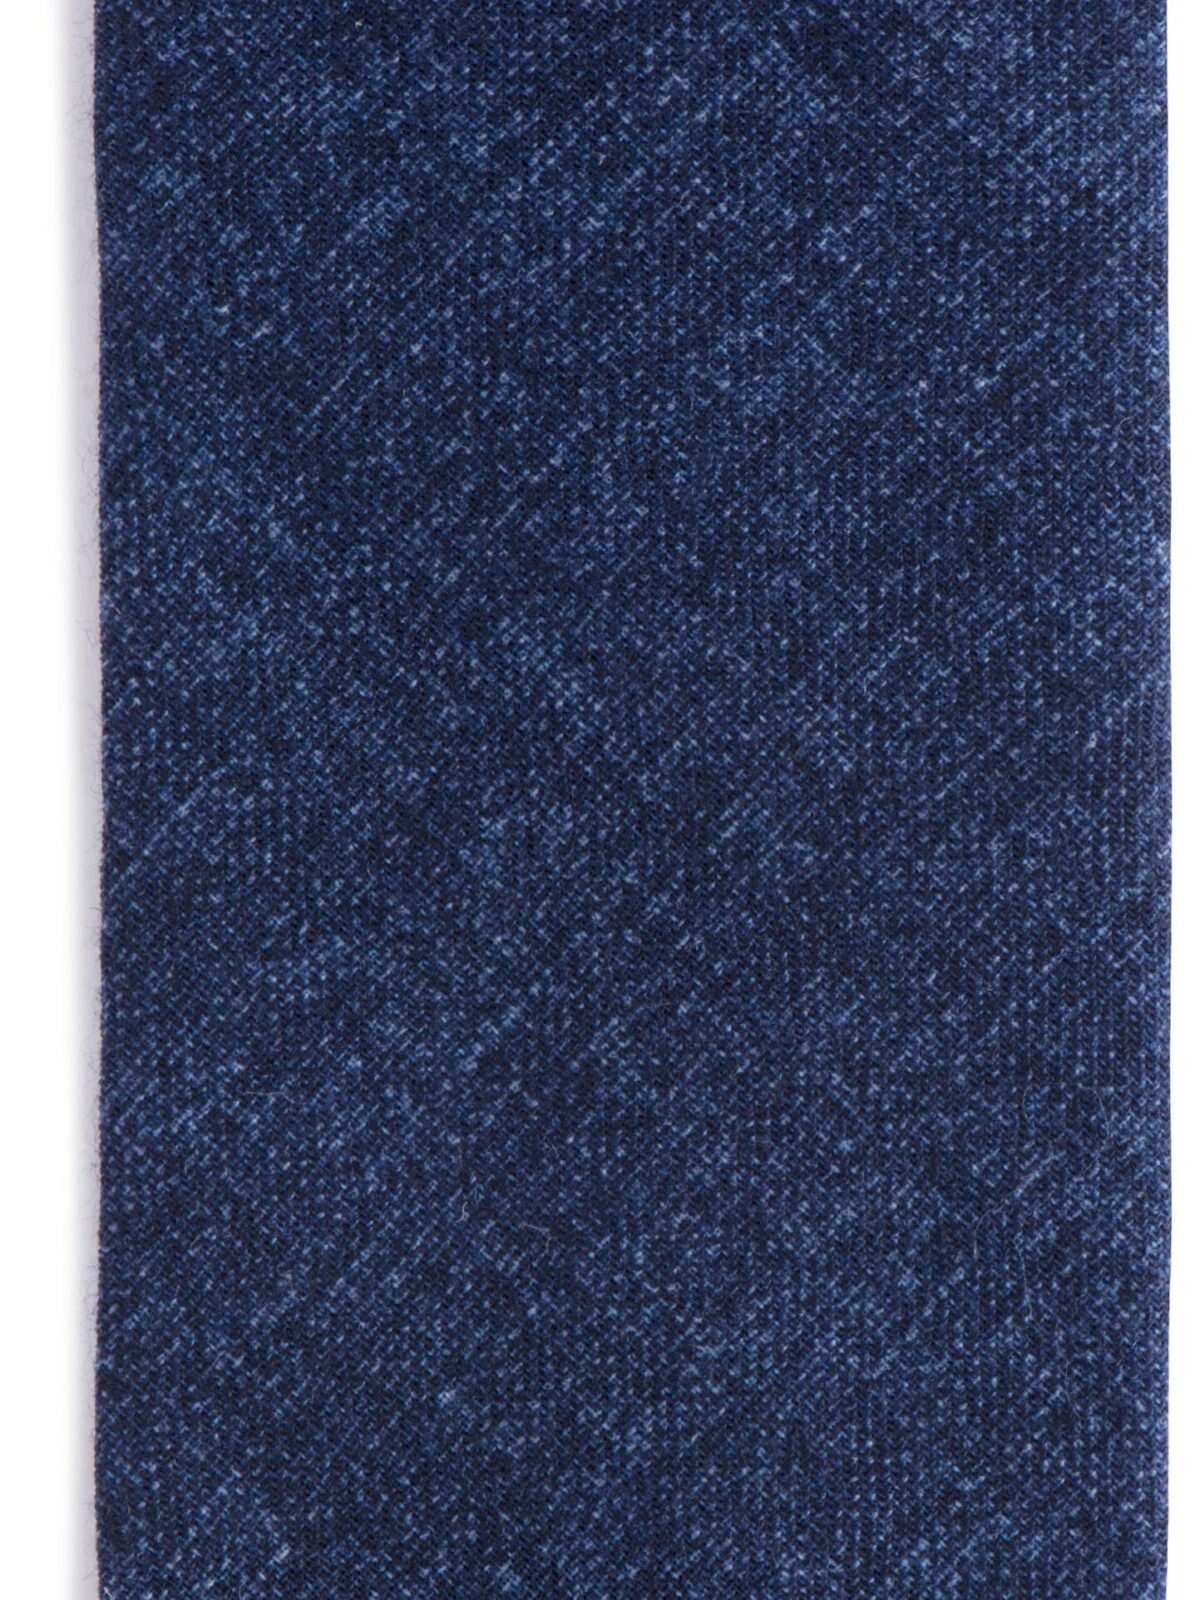 Biella Navy Melange Wool Tie